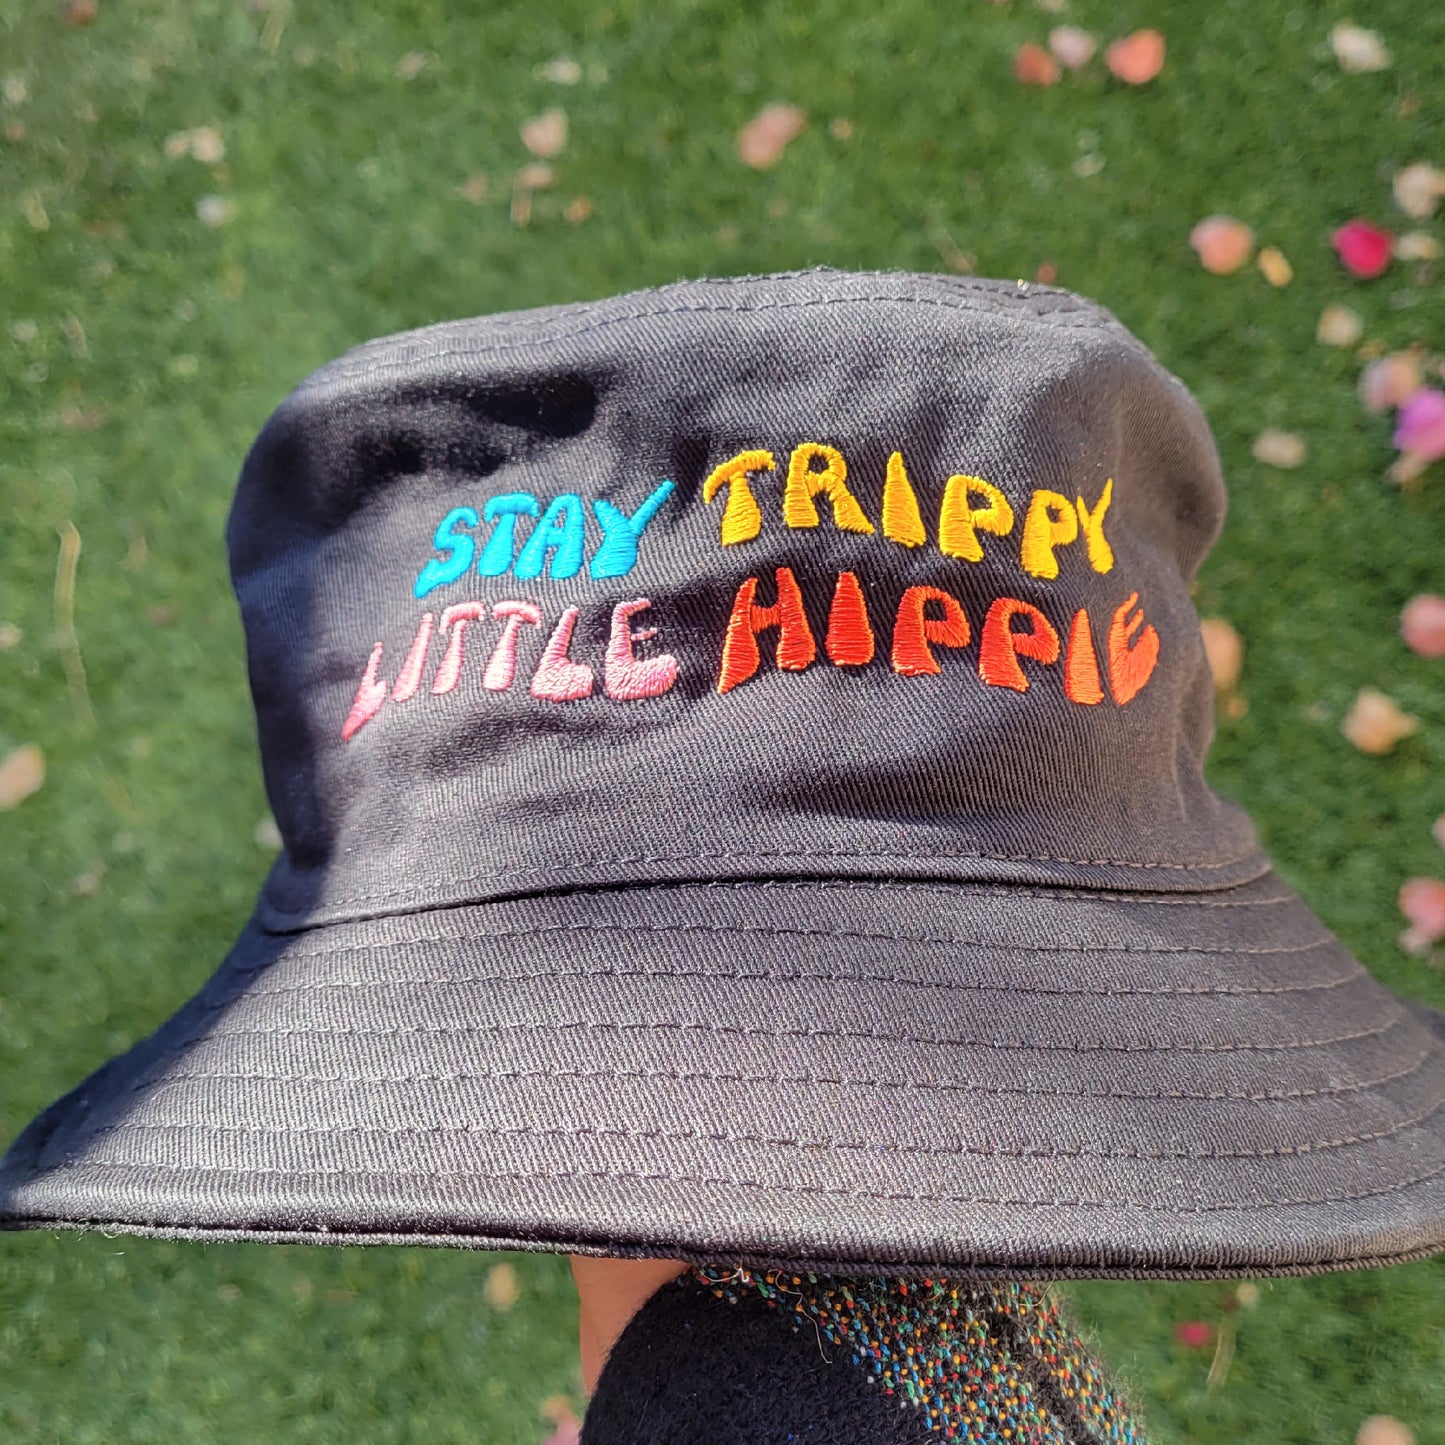 "Stay Trippy Little Hippie" Bucket Hat